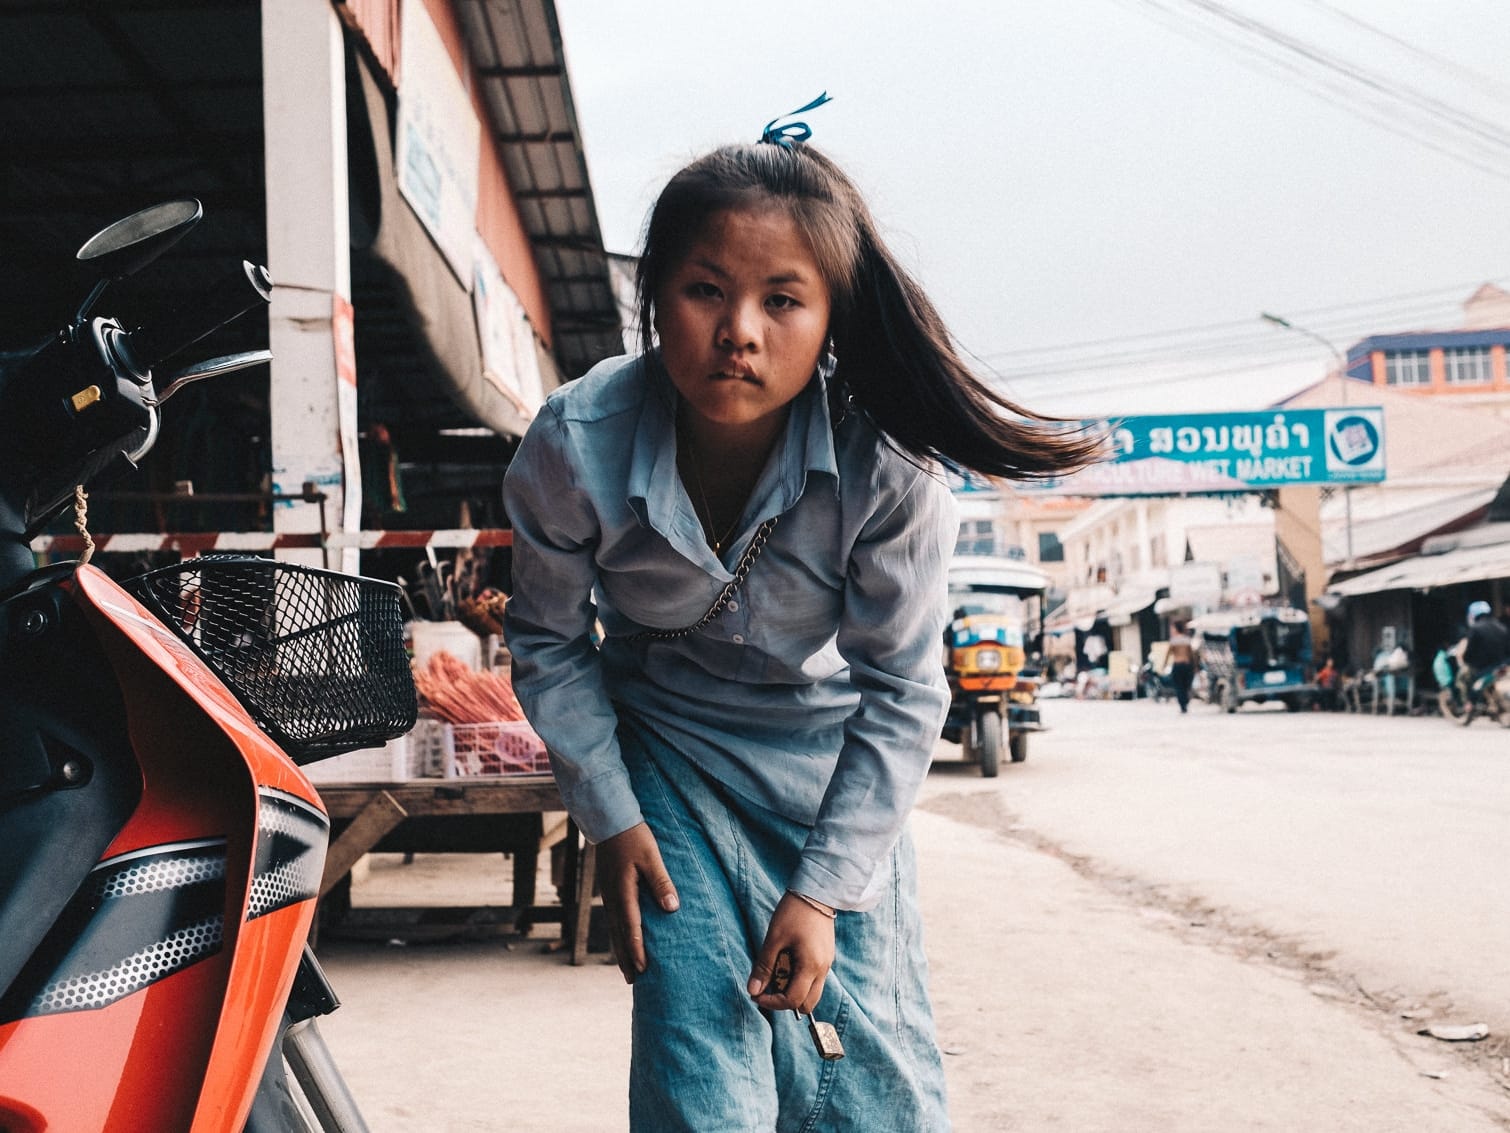 Phonsavan, Laos. February 2019